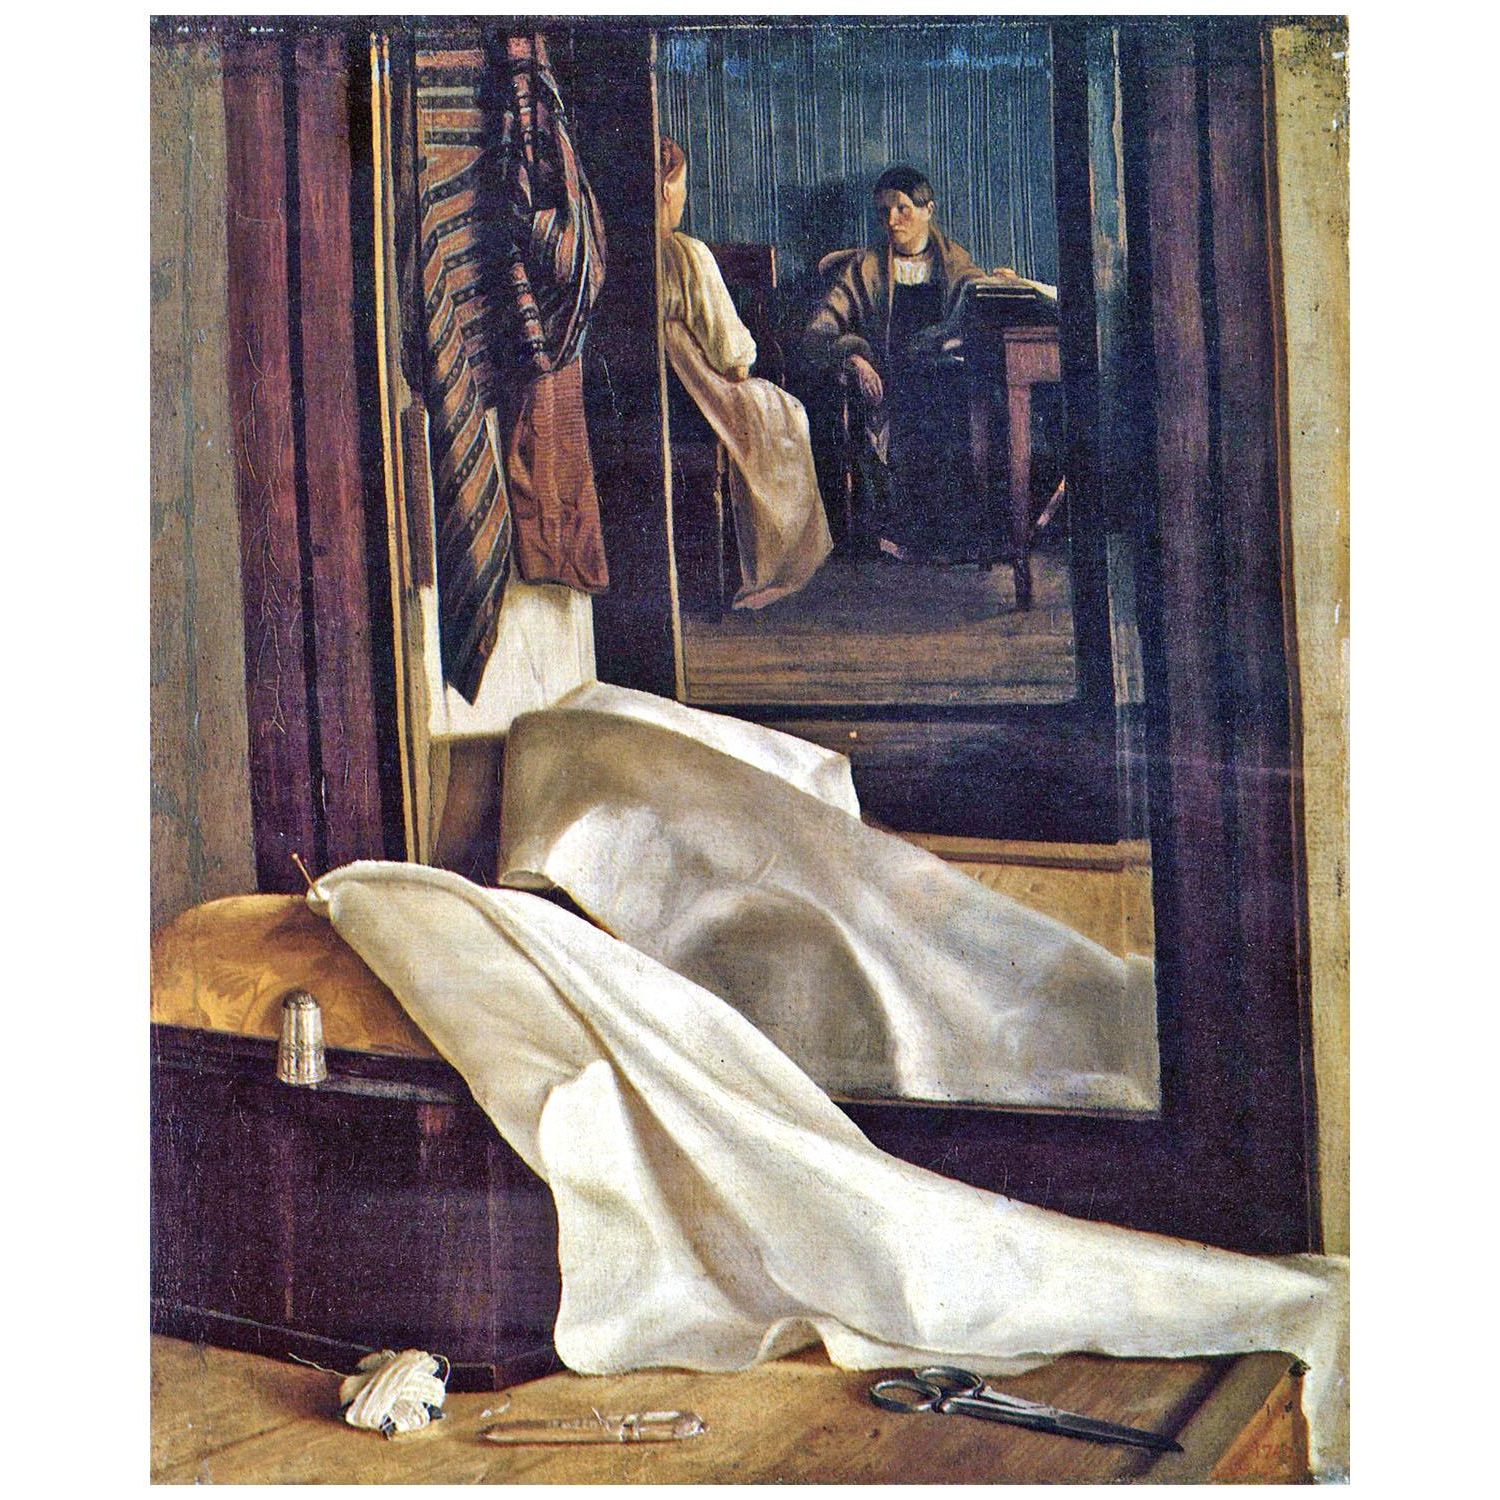 Григорий Сорока. Отражение в зеркале. 1850. Русский музей